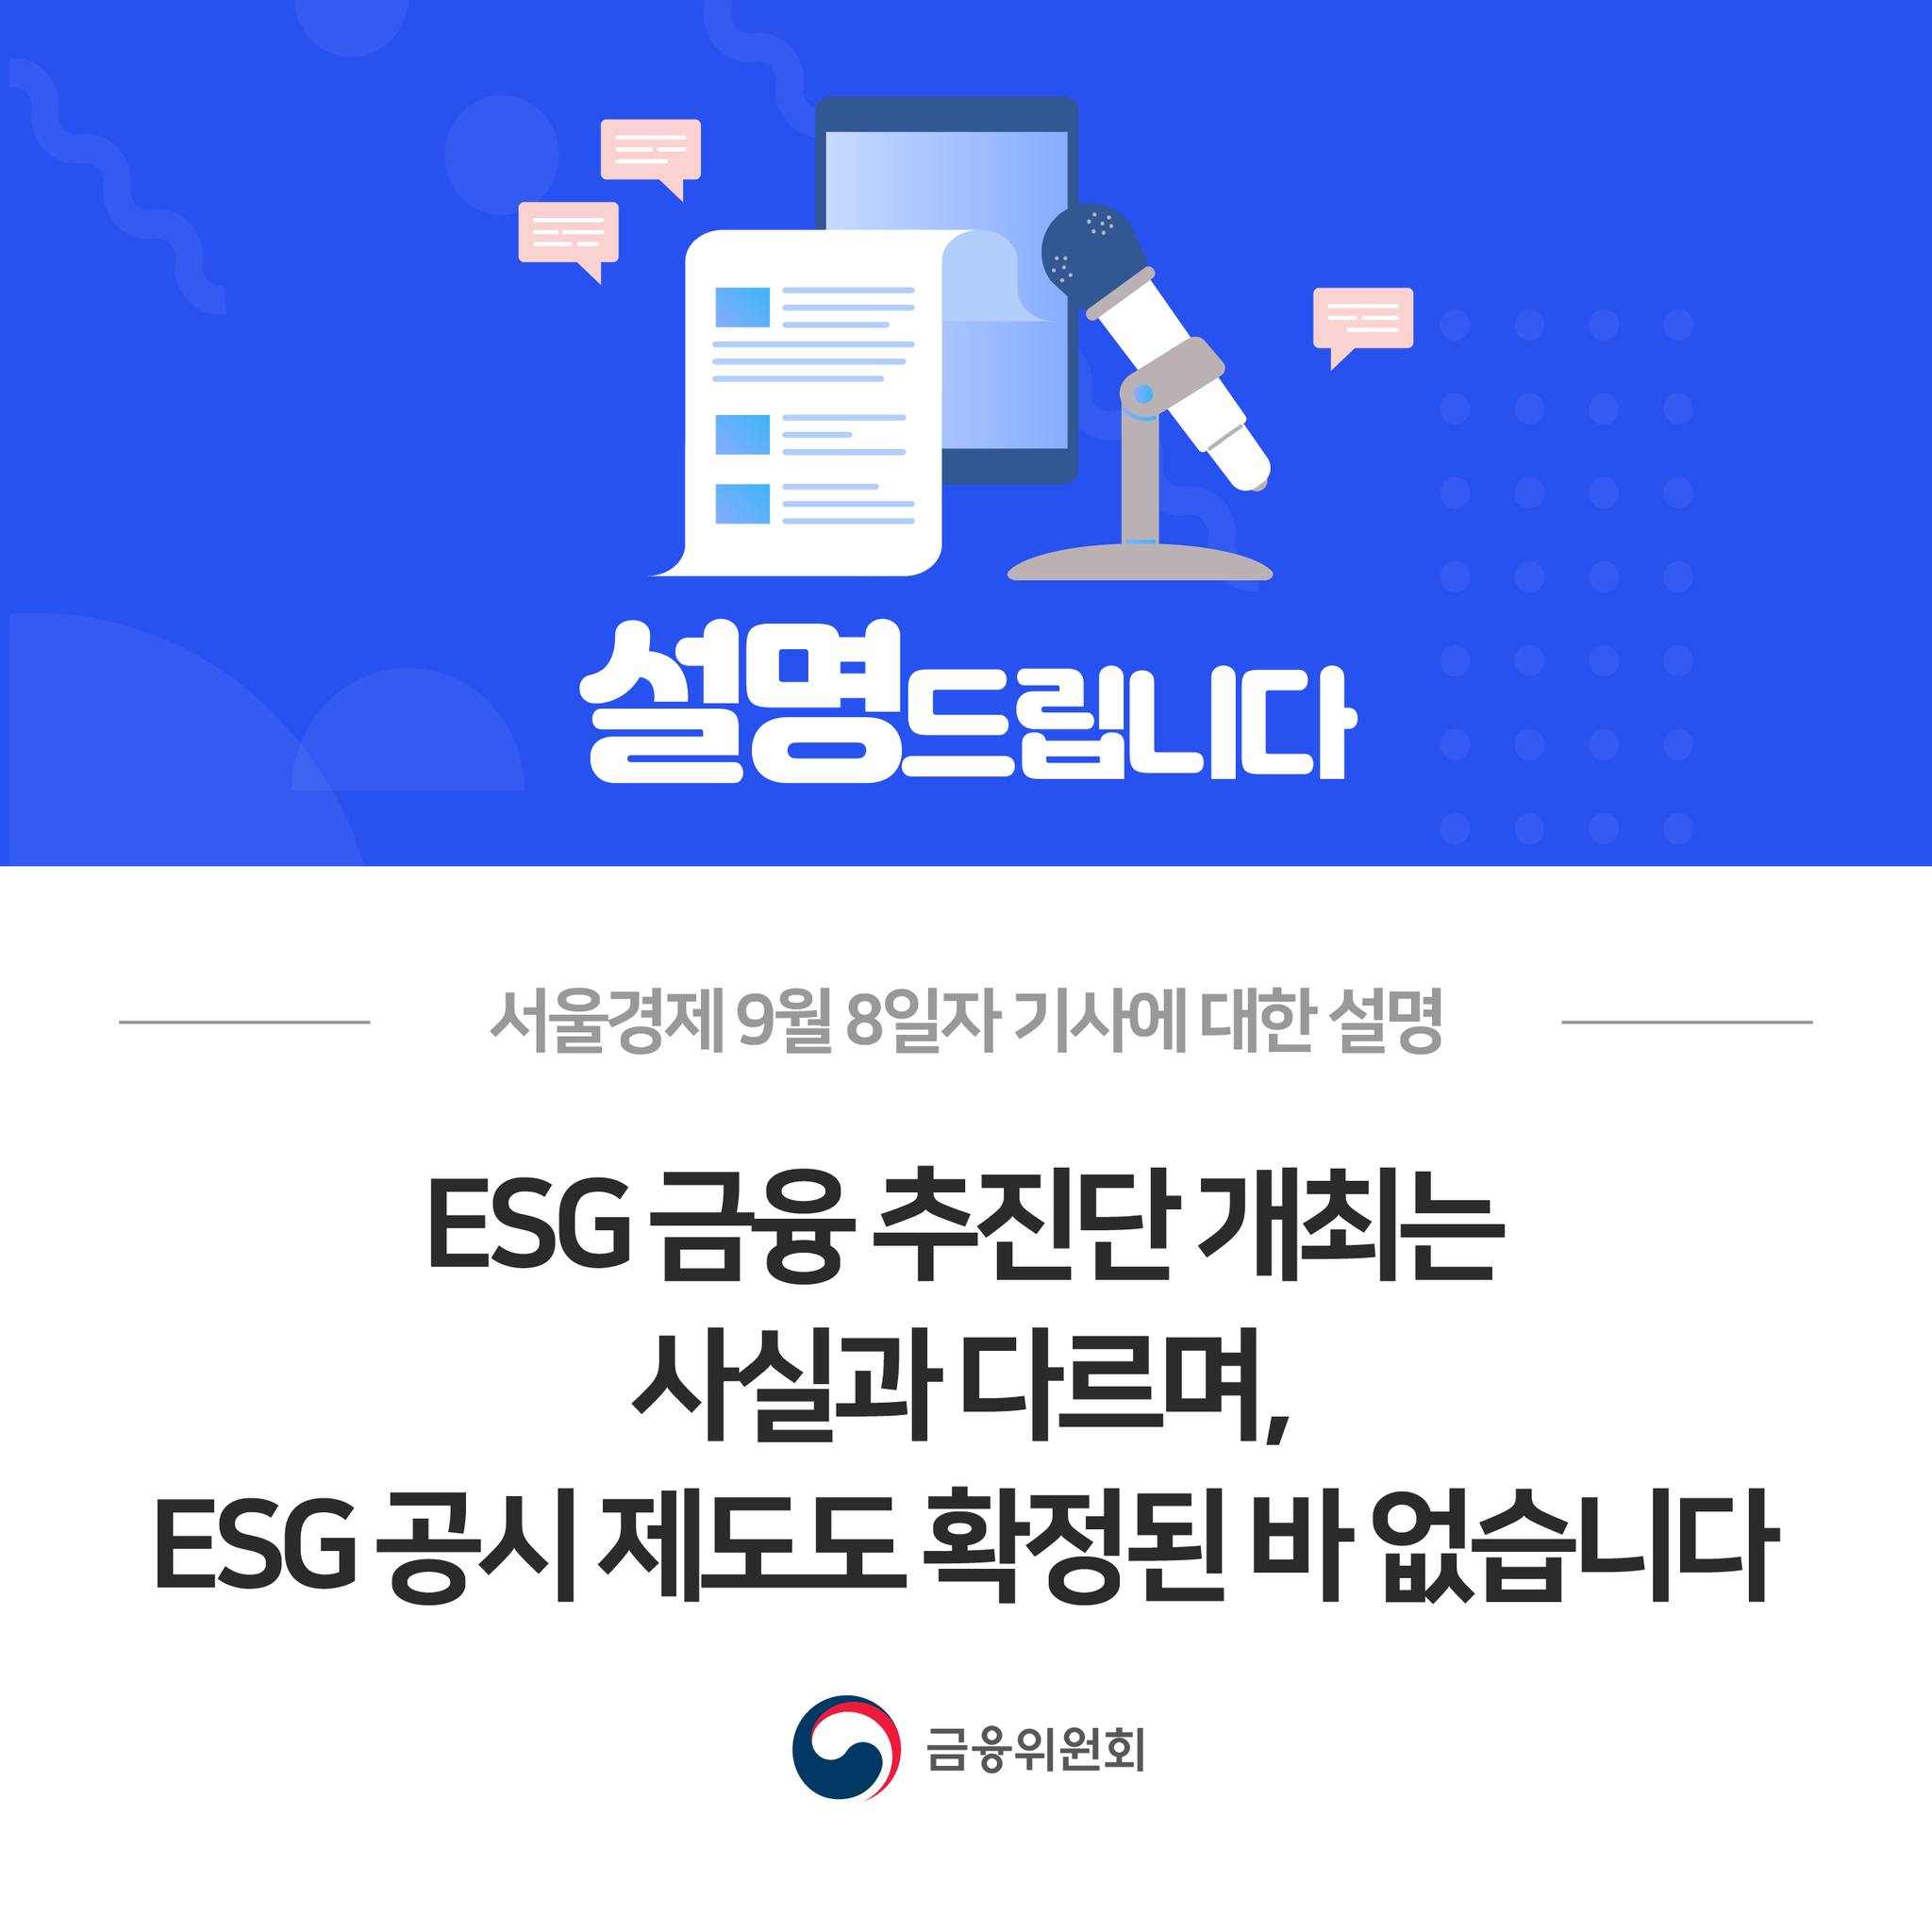 서울경제 9월 8일자 기사에 대한 설명. ESG 금융 추진단 개최는 사실과 다르며, ESG 공시 제도도 확정된 바 없습니다.